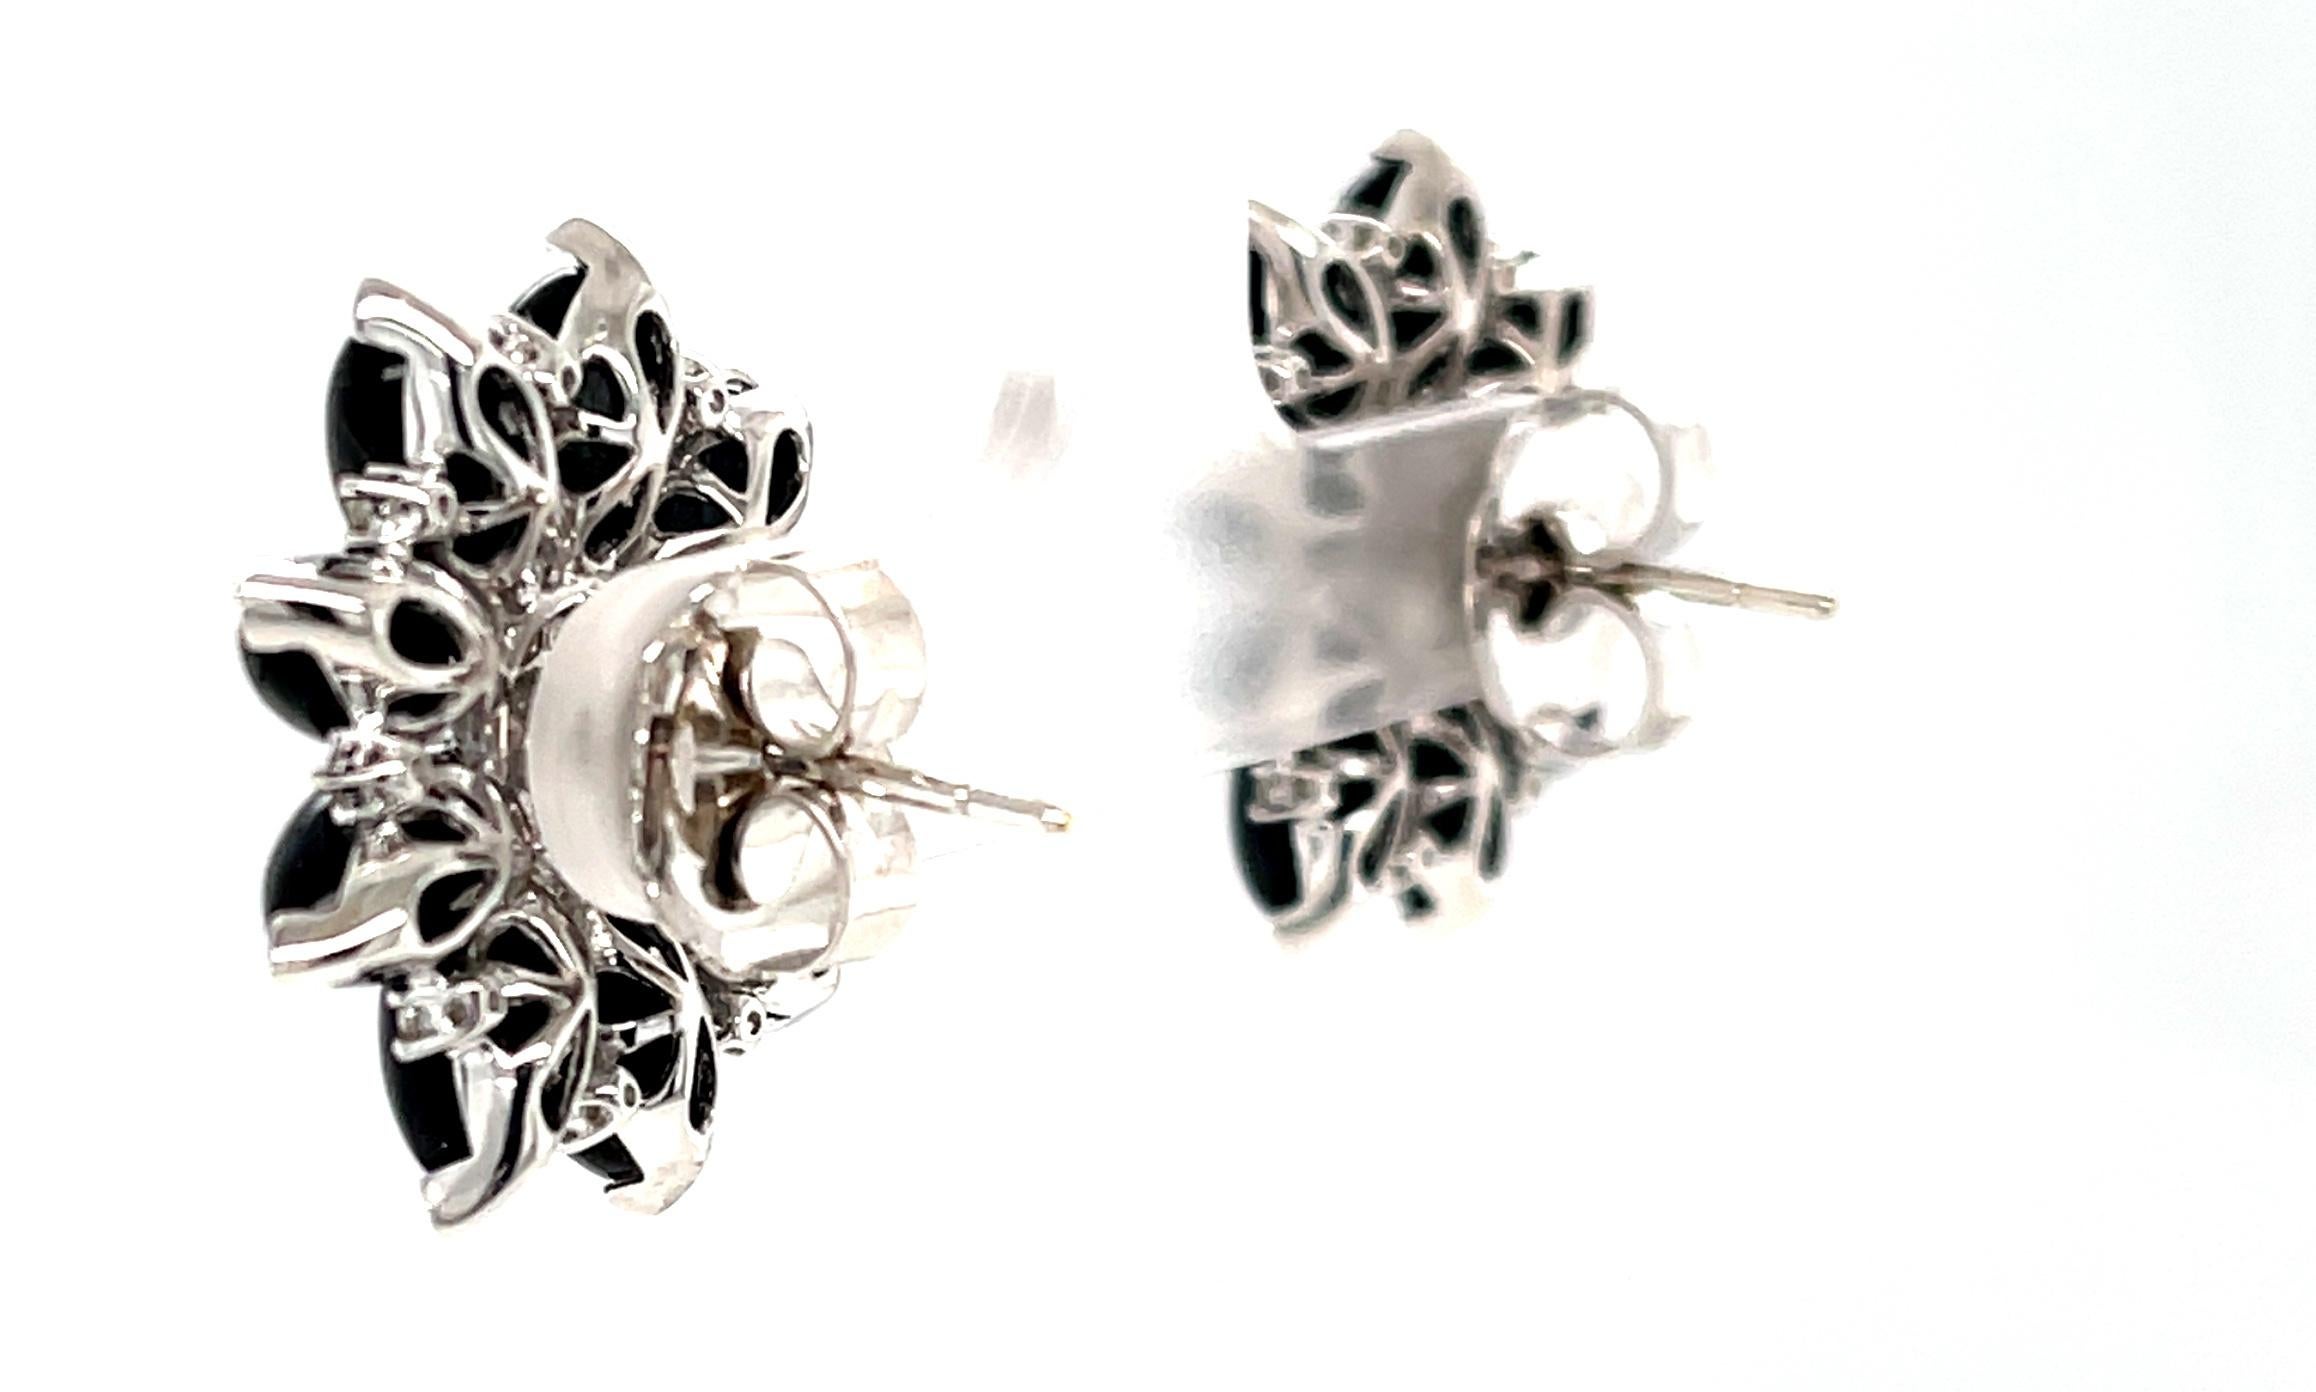 Artisan Diamond and Onyx Flower Earrings in 18K White Gold, .91 Carat Total